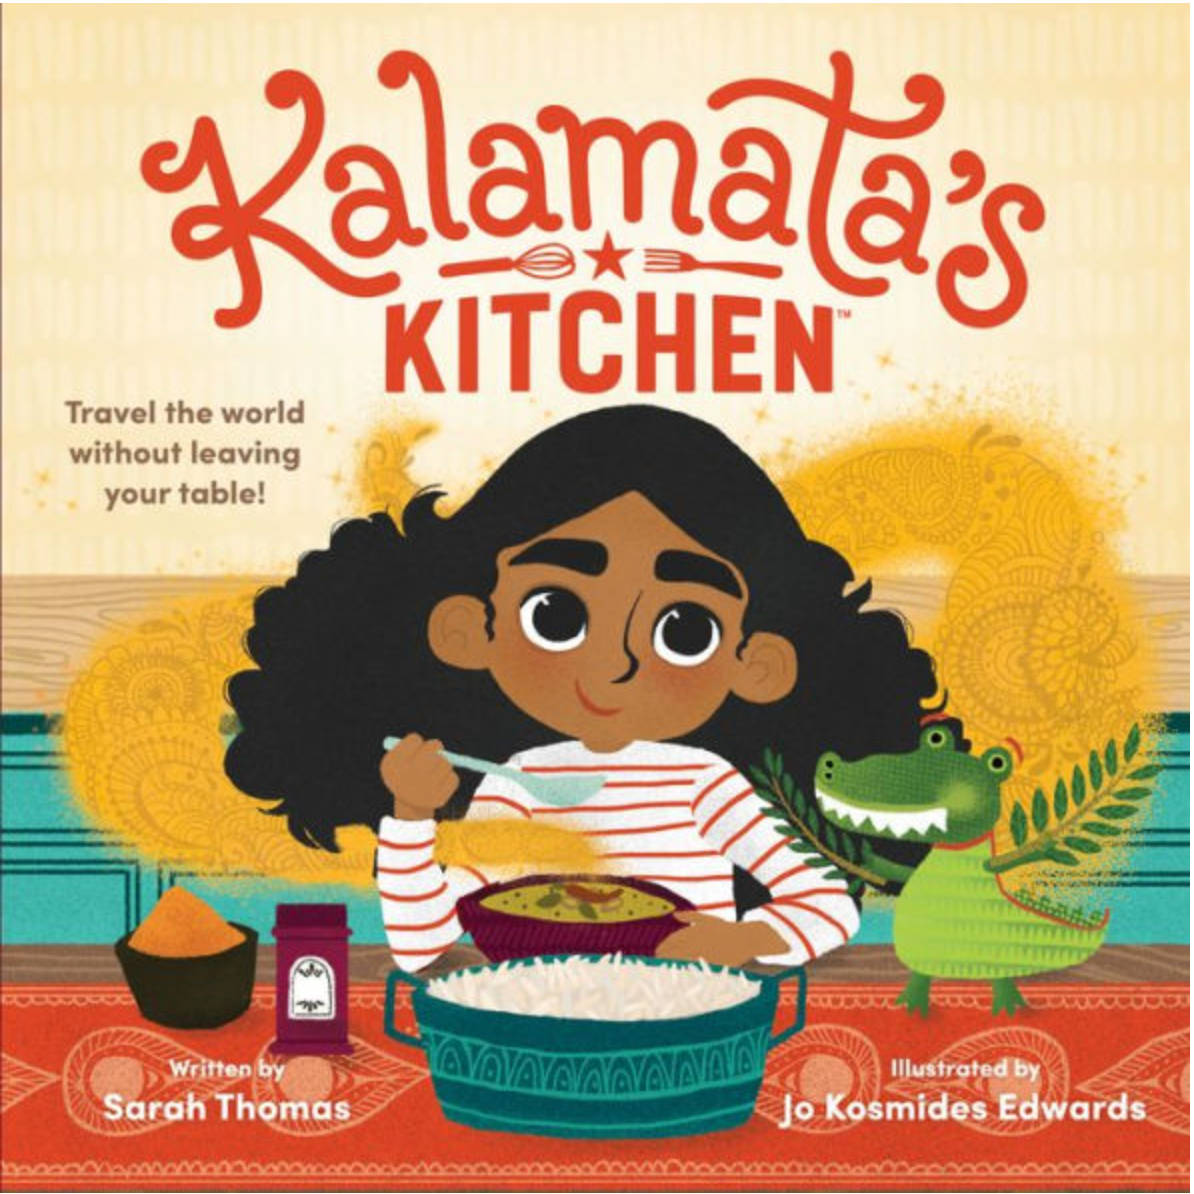 Kalamata's Kitchen Children's Book